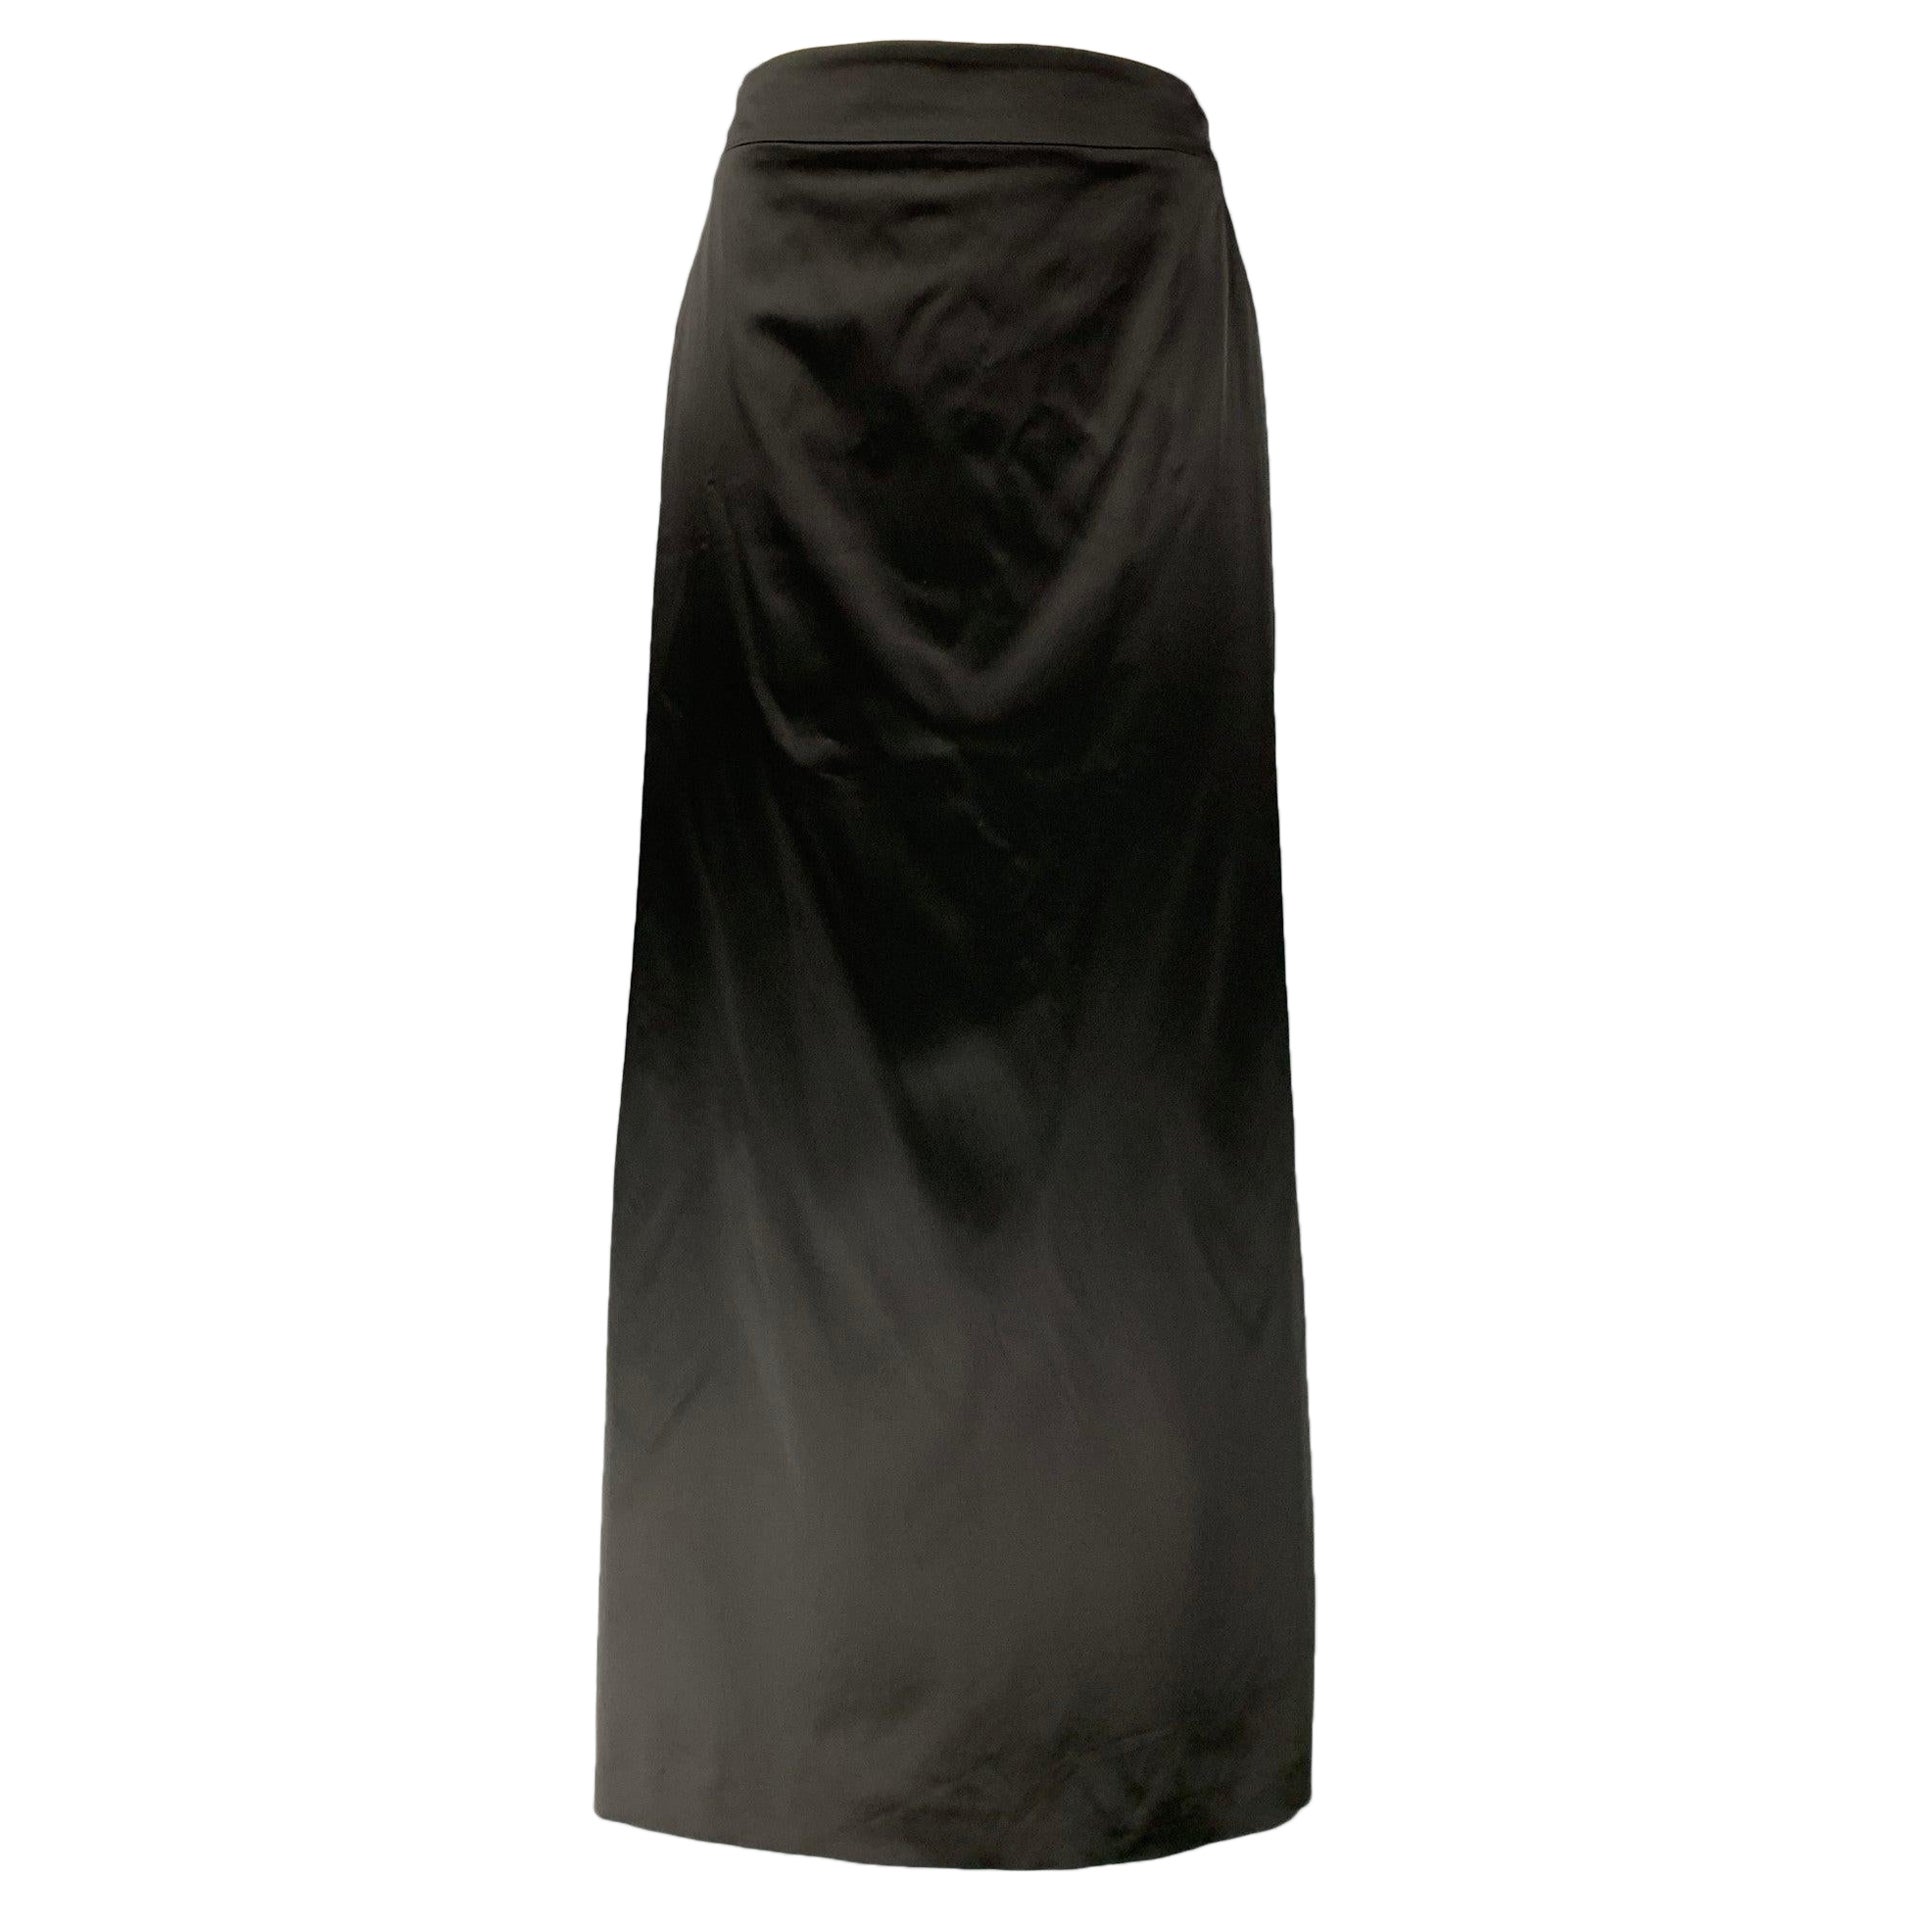 JIL SANDER Size 6 Black Acetate Blend Solid Evening Long Skirt For Sale